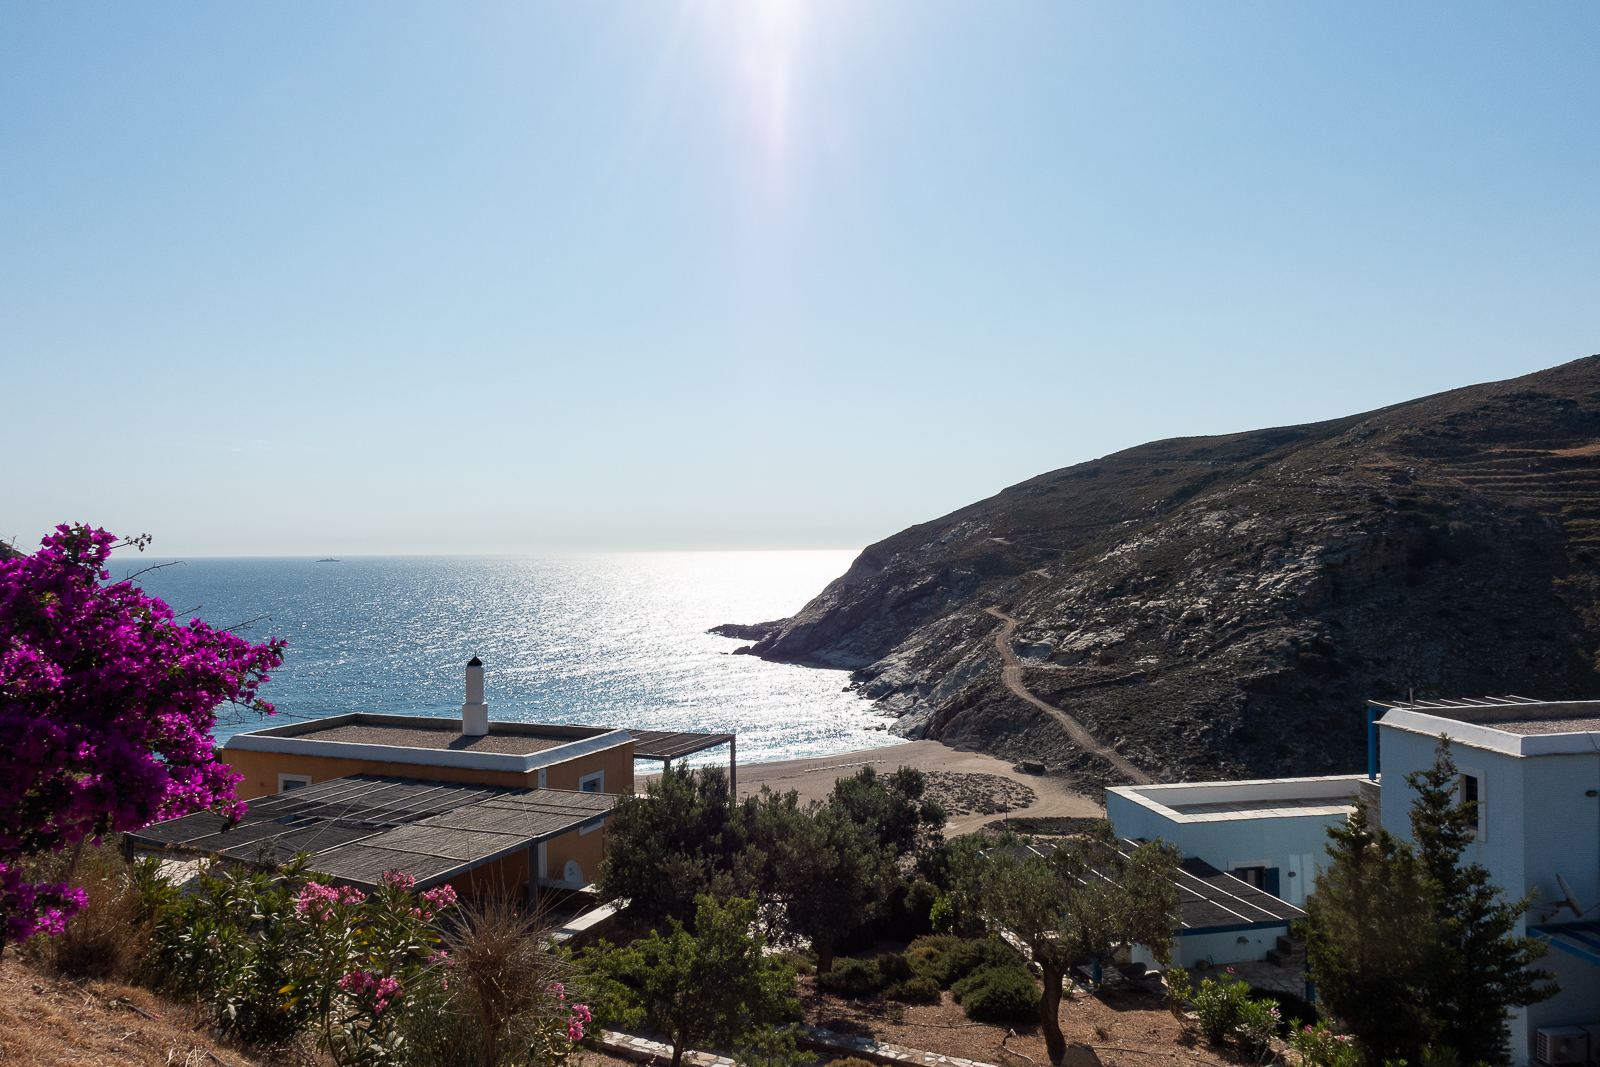 Itinéraire d'un voyages dans les Cyclades : Zorkos Bay, Andros. Partis pour les Cyclades